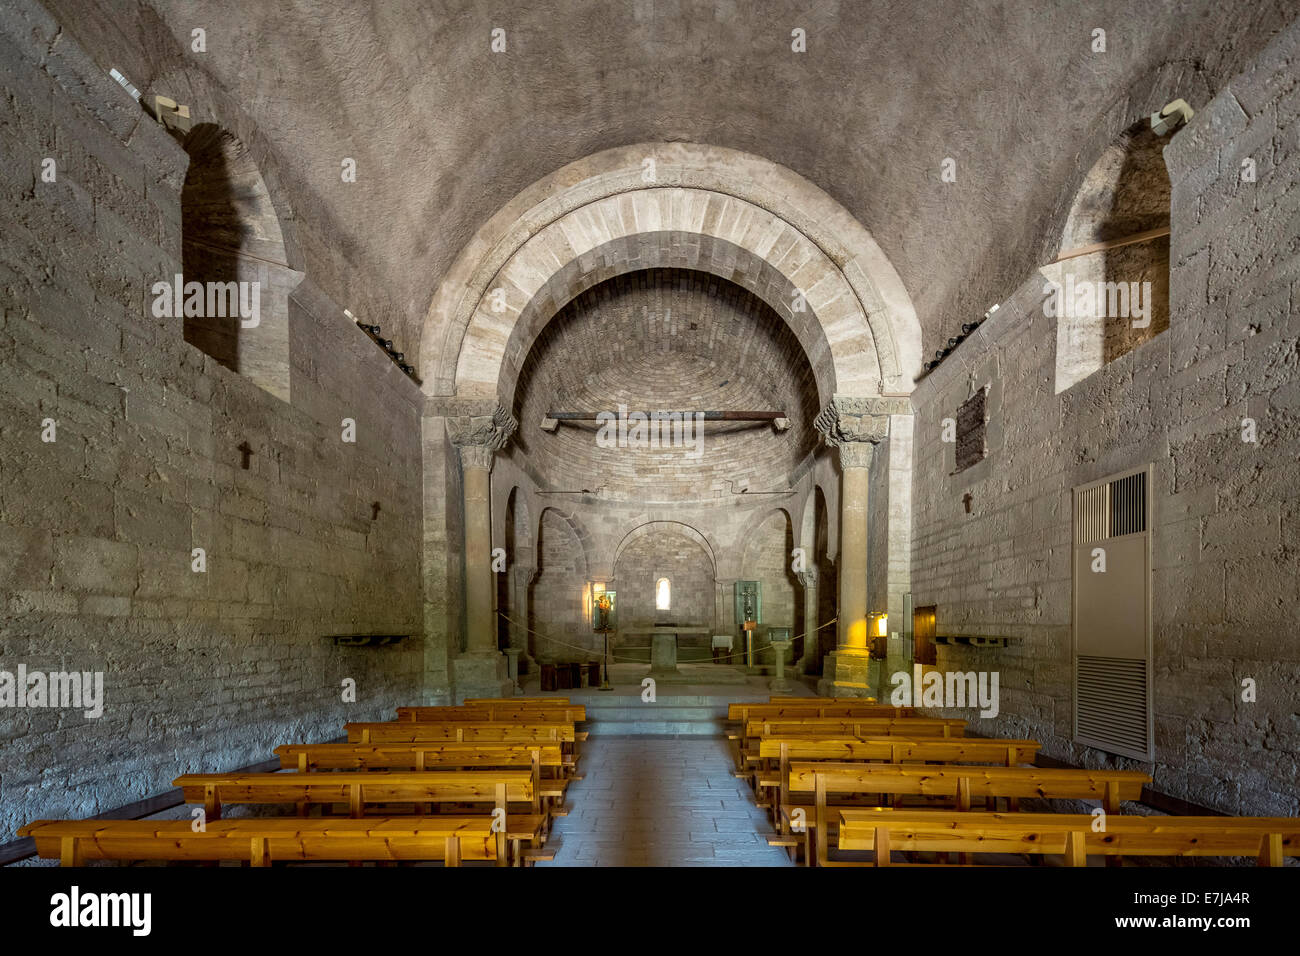 Nave, interior of Romanesque church of Santa Maria de Porqueres, Porqueres, Catalonia, Spain Stock Photo